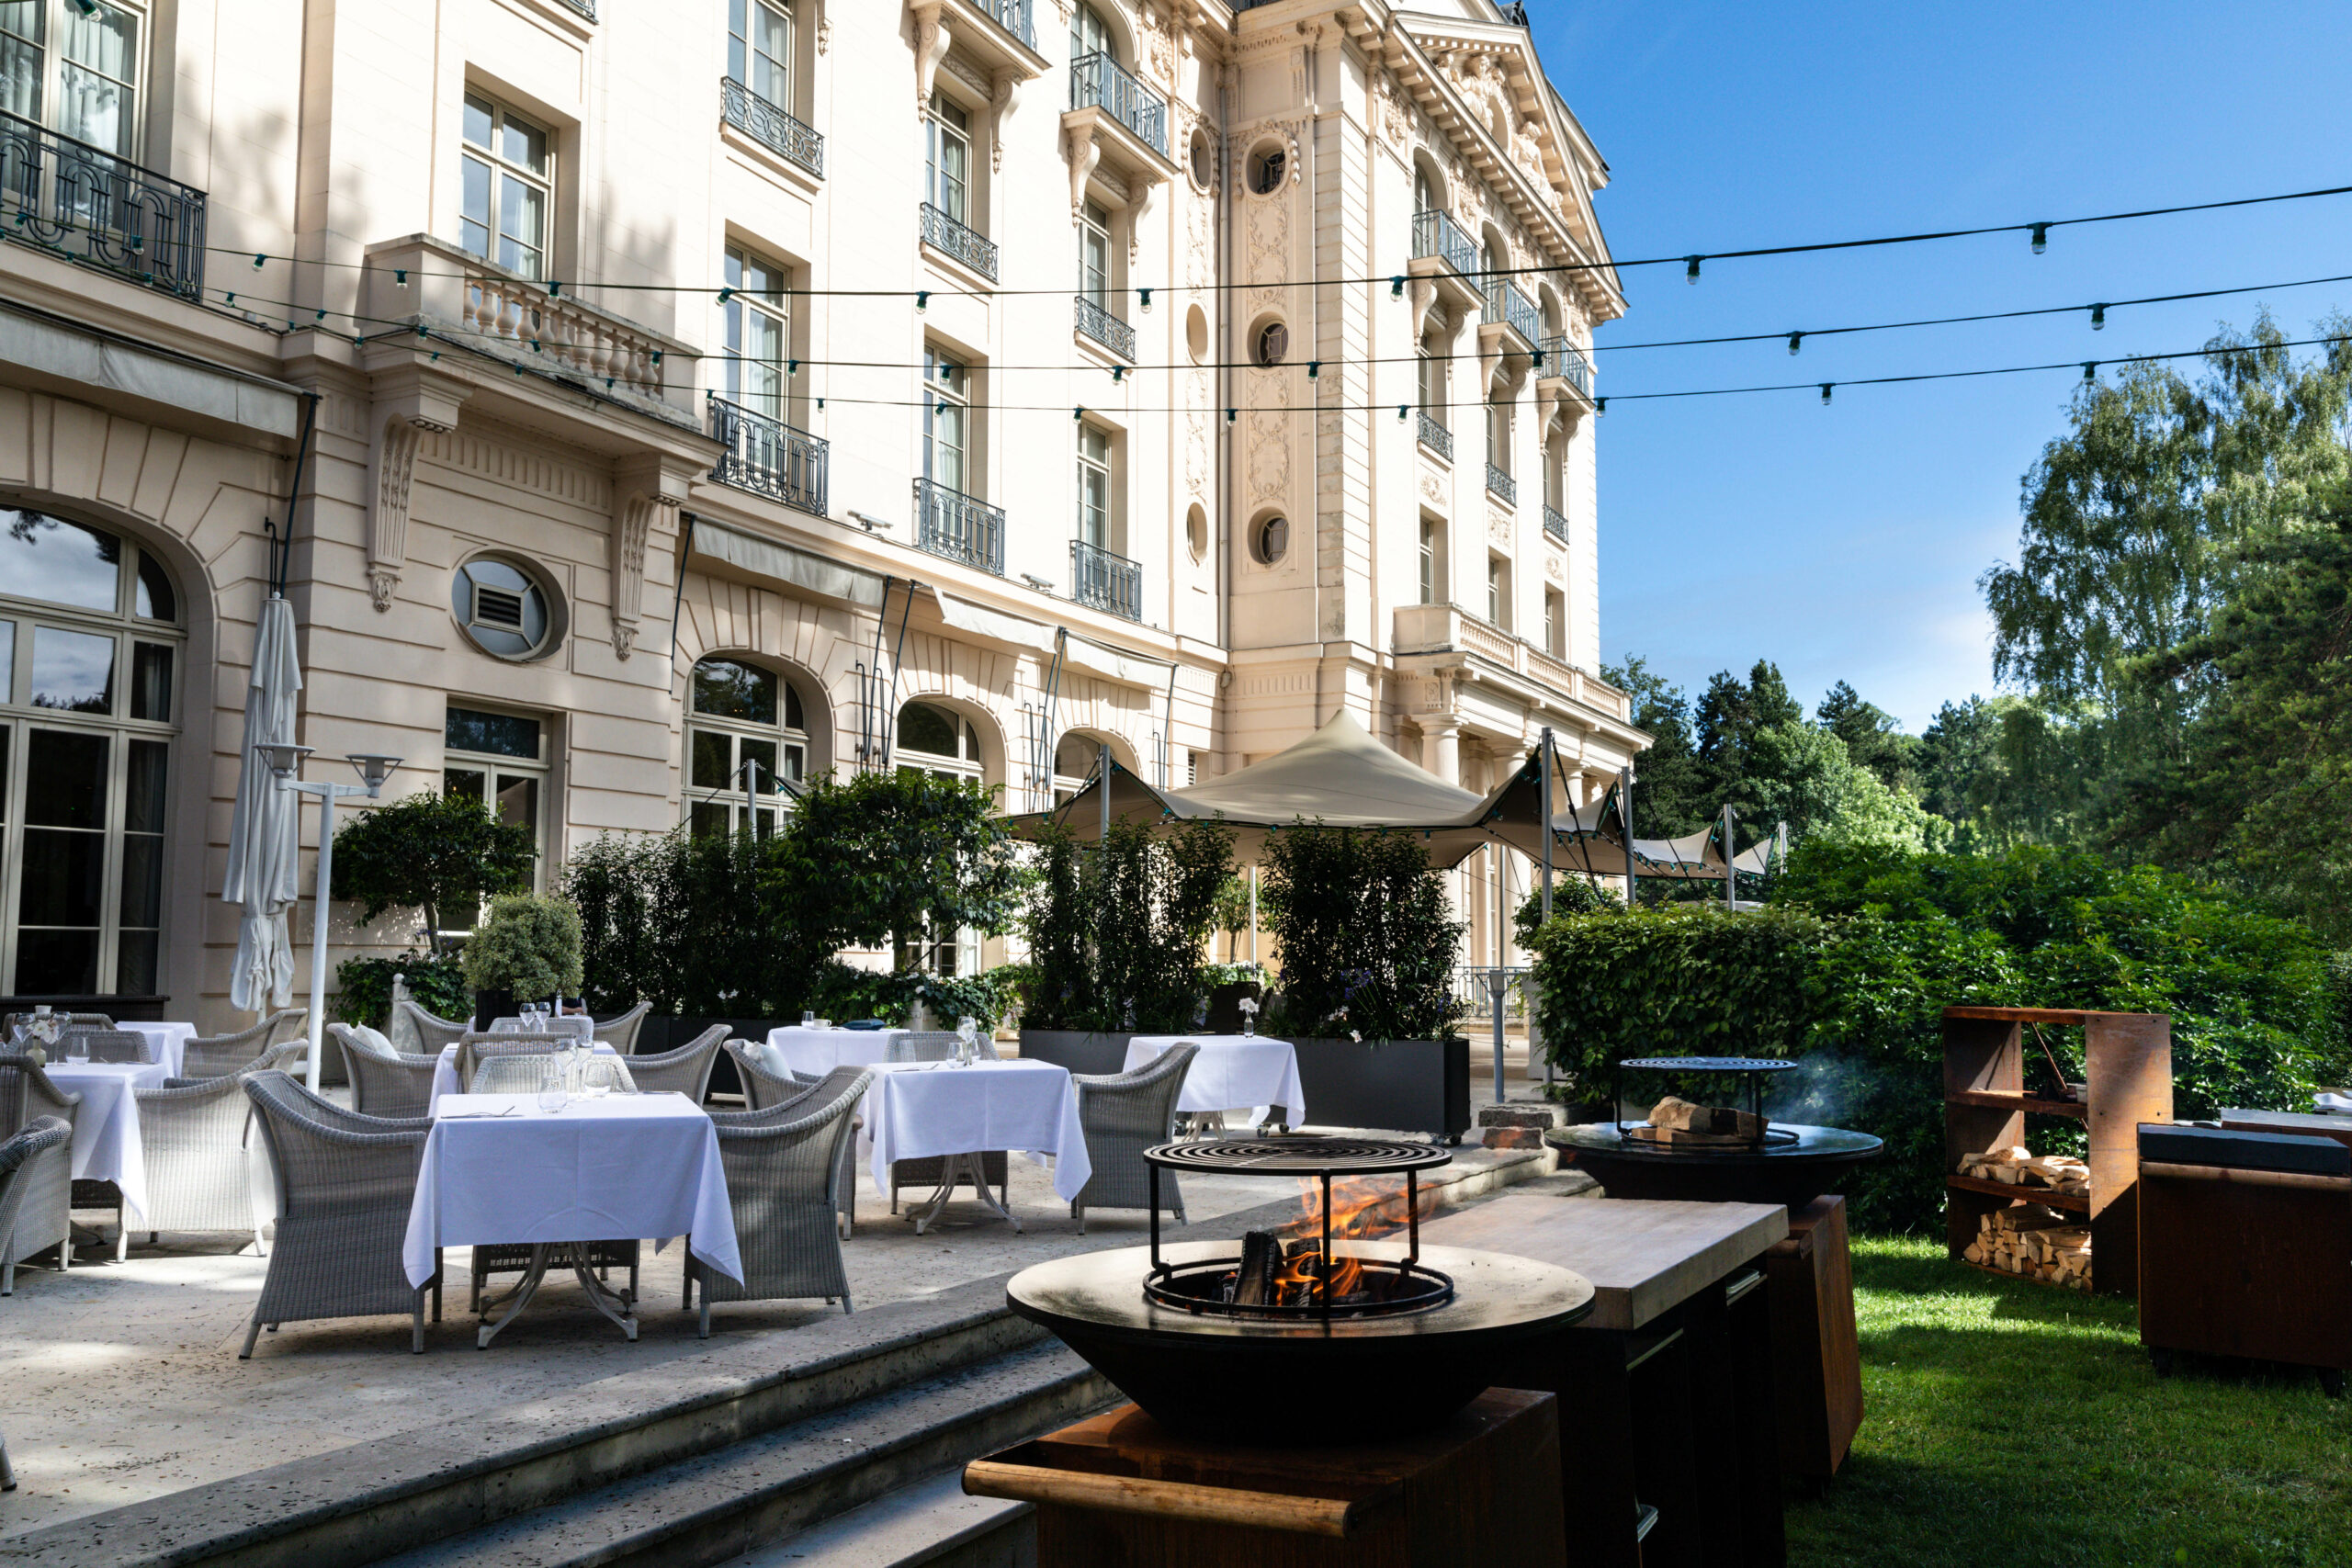 La façade éclairée du Trianon Palace Versailles avec en premier une terrasse où des tables sont élégamment dressées pour le diner, face à une plancha barbecue